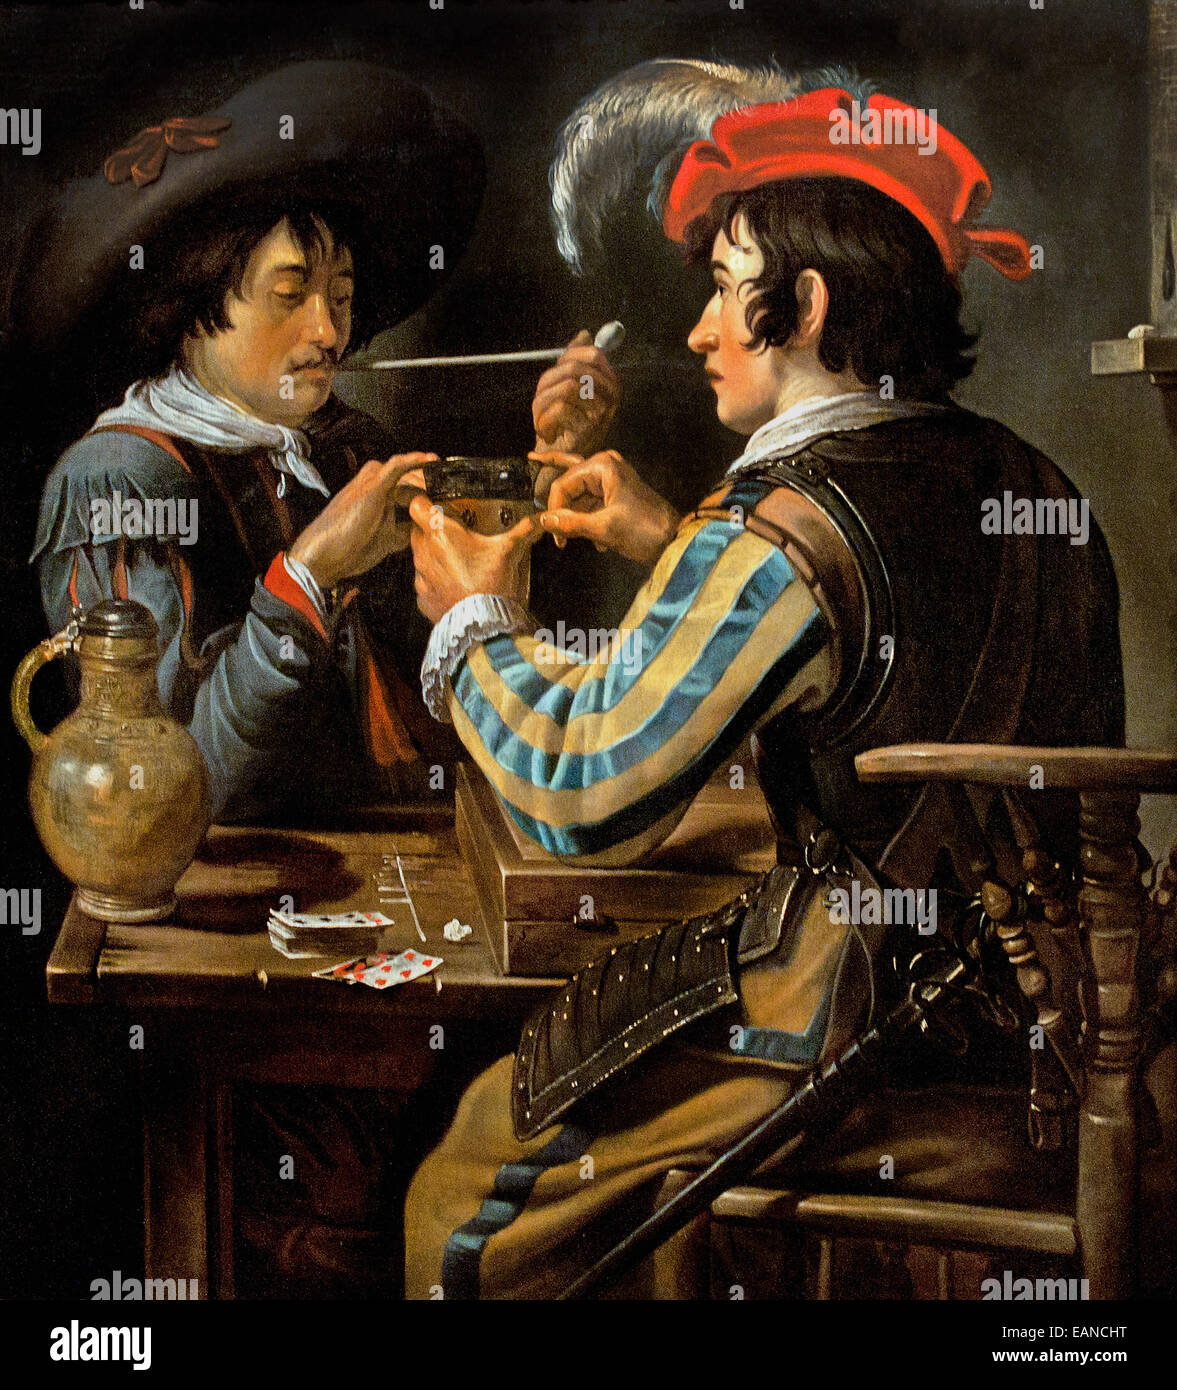 Les Joueurs de cartes - Los jugadores de cartas Theodoor Rombouts 1597 - 1637 Bélgica la barroca flamenca Foto de stock